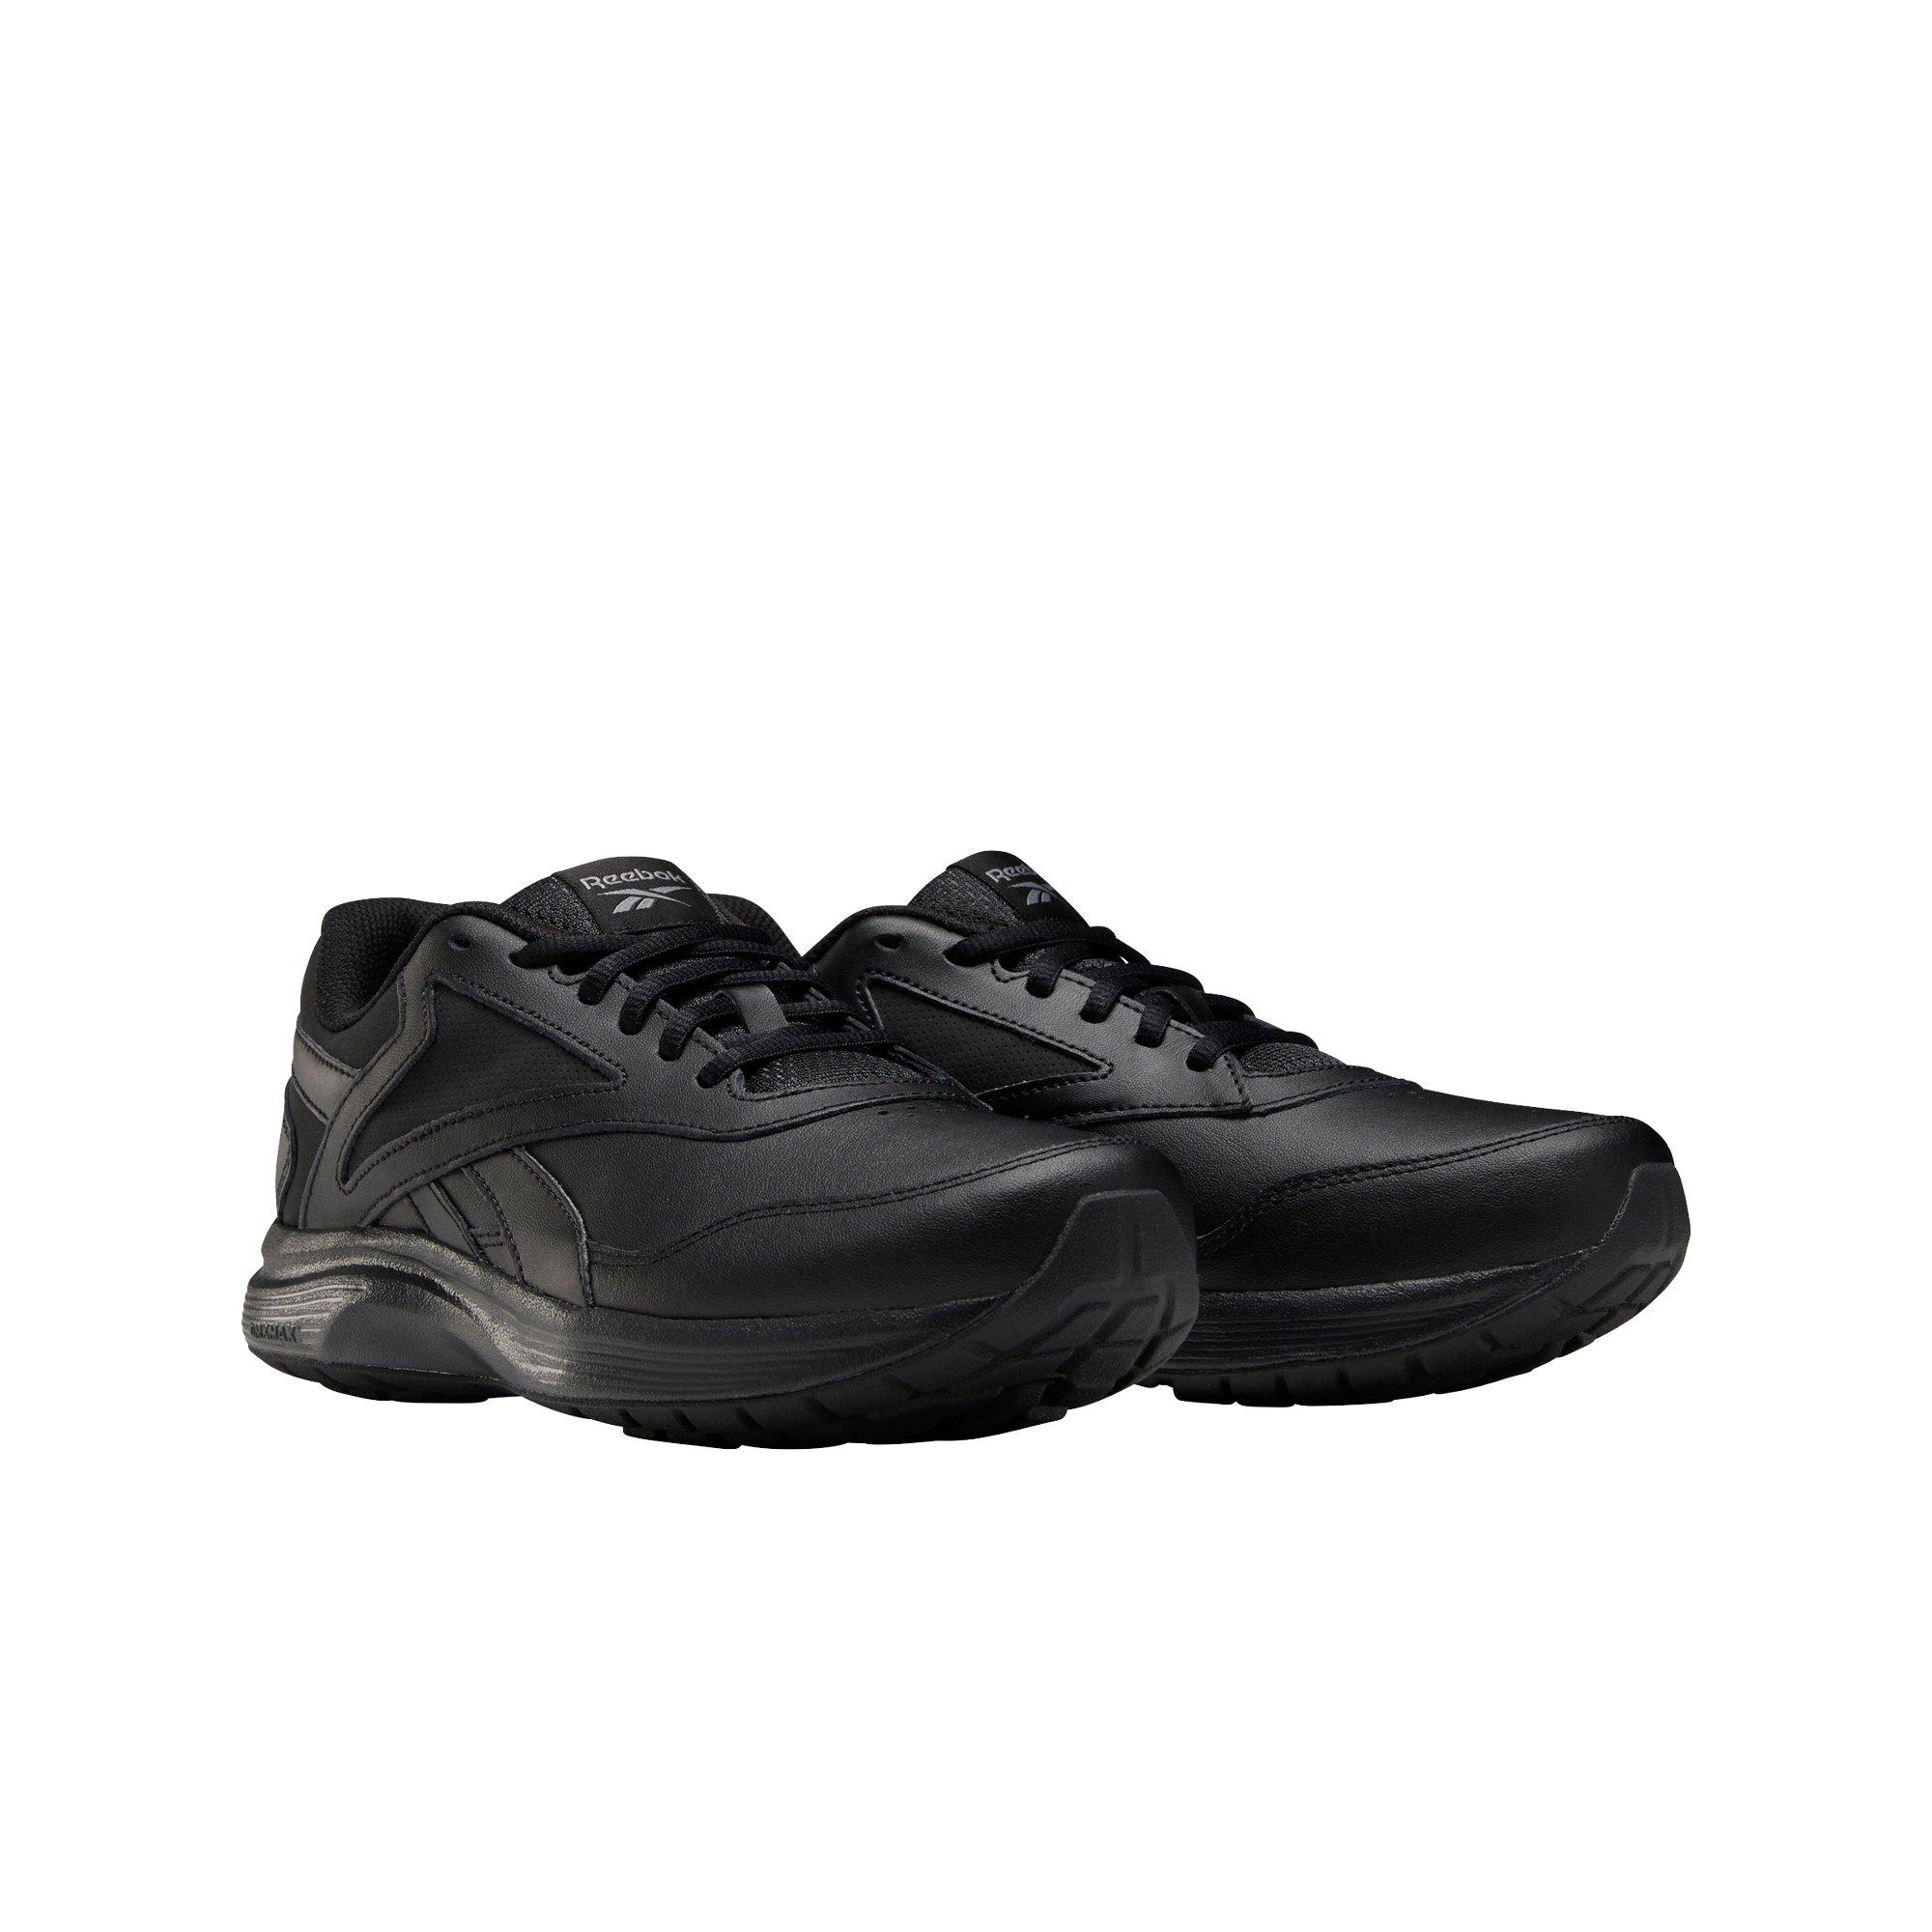 Reebok Ultra 7.0 DMX MAX Wide "Black" Women's Walking Shoe Hibbett | City Gear